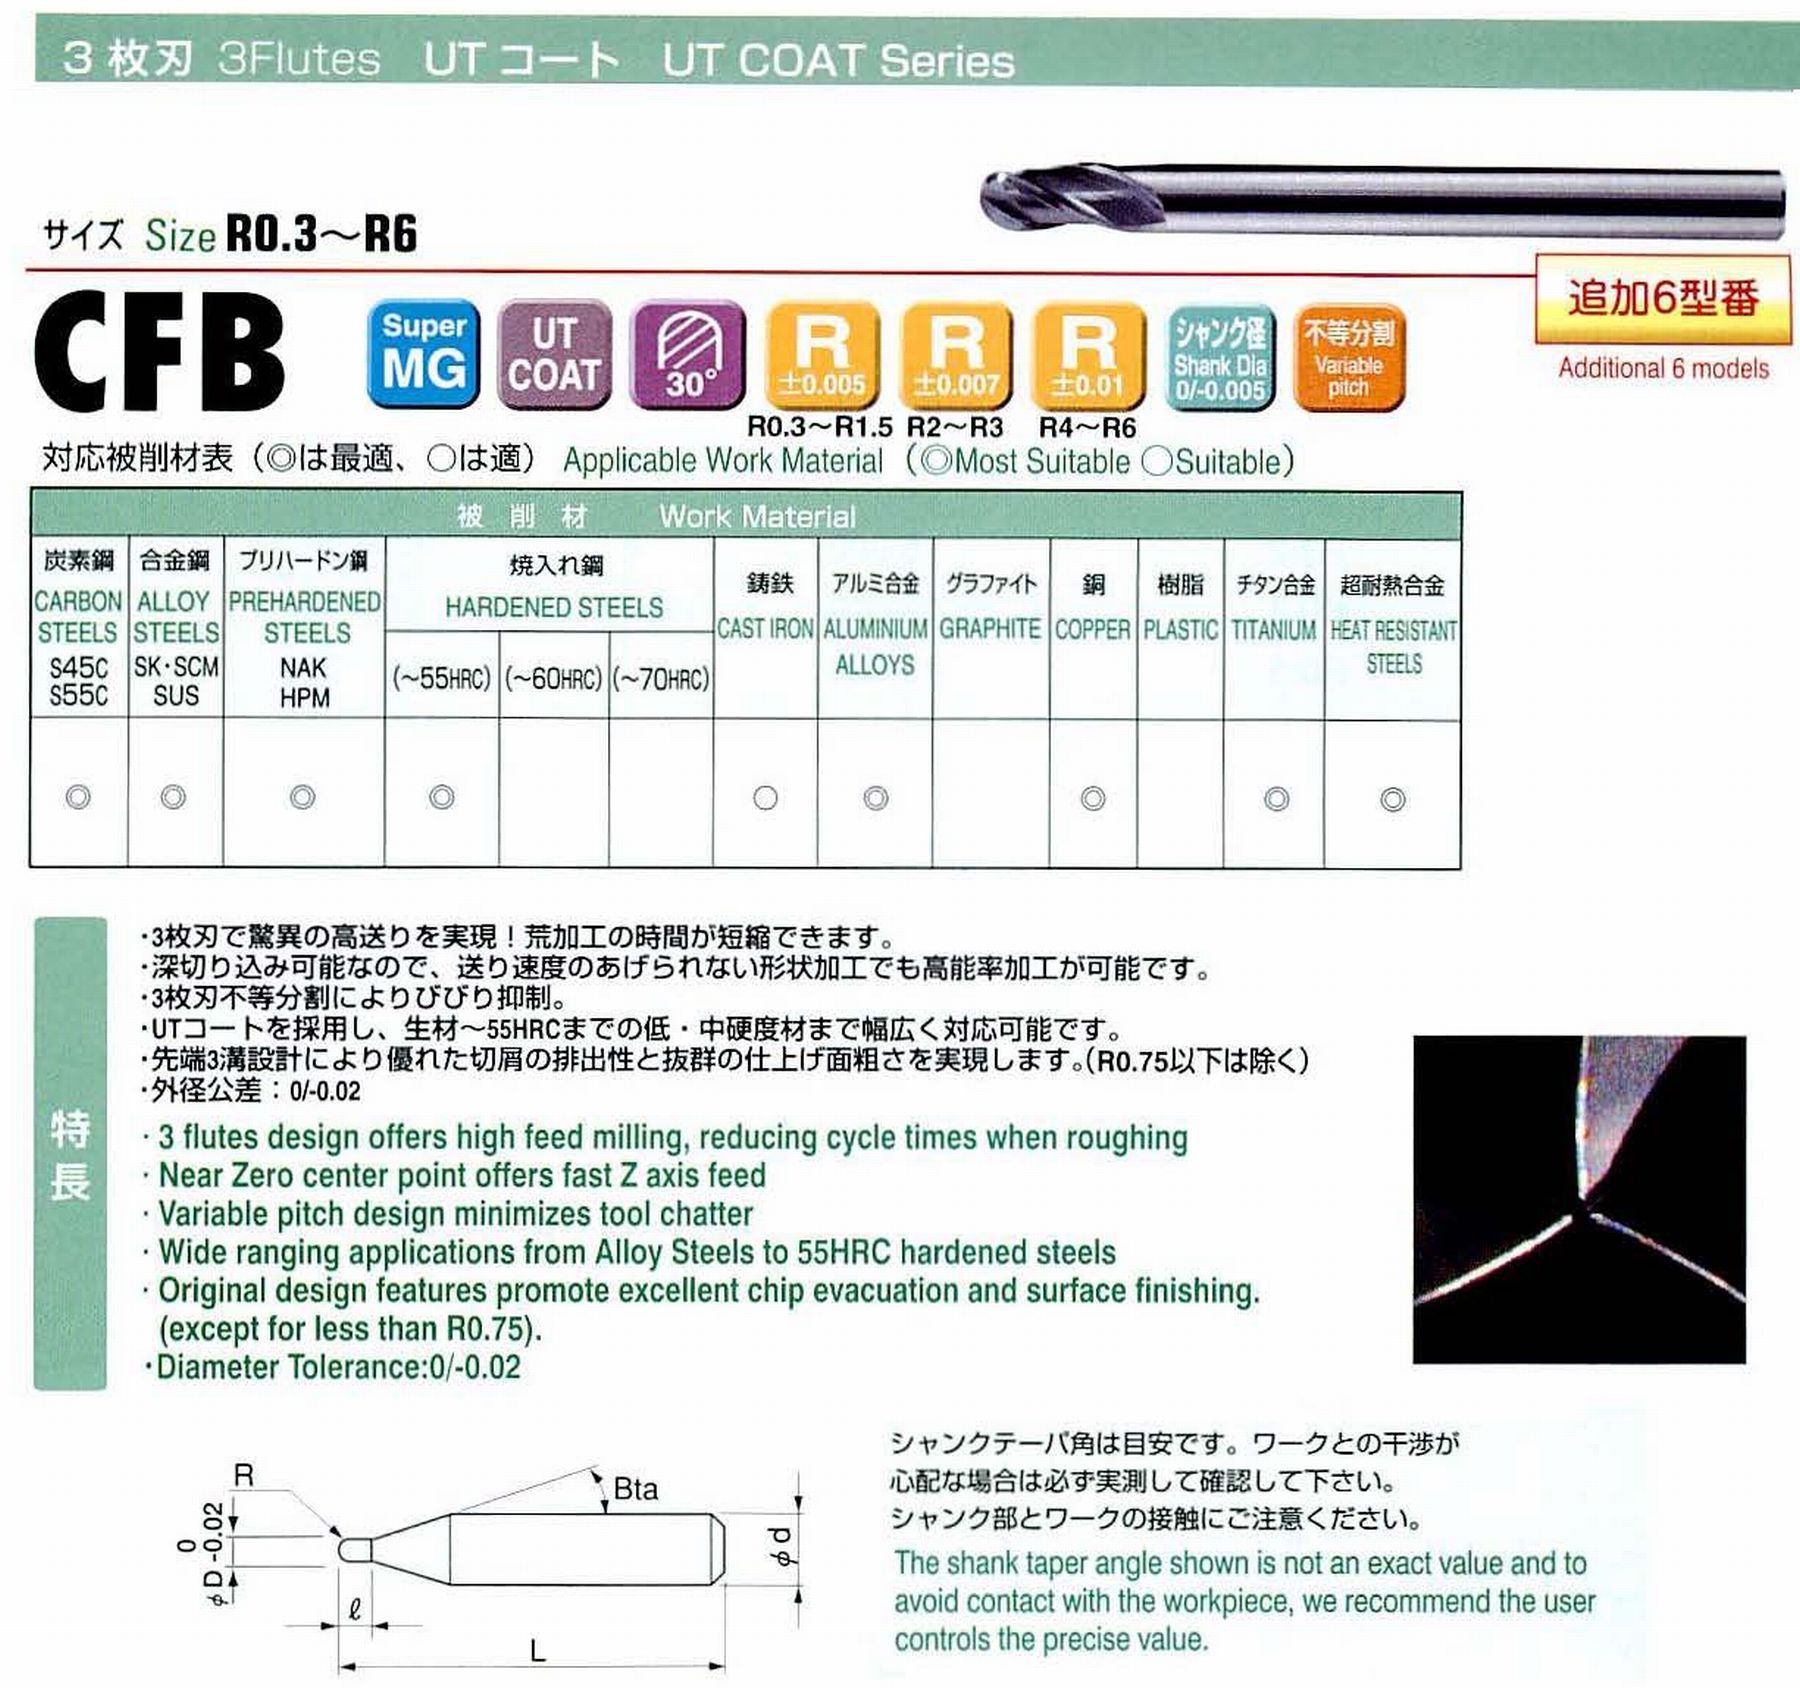 ユニオンツール 3枚刃 CFB3080-1200 ボール半径R4 刃長12 シャンクテーパ角- 全長90 シャンク径8